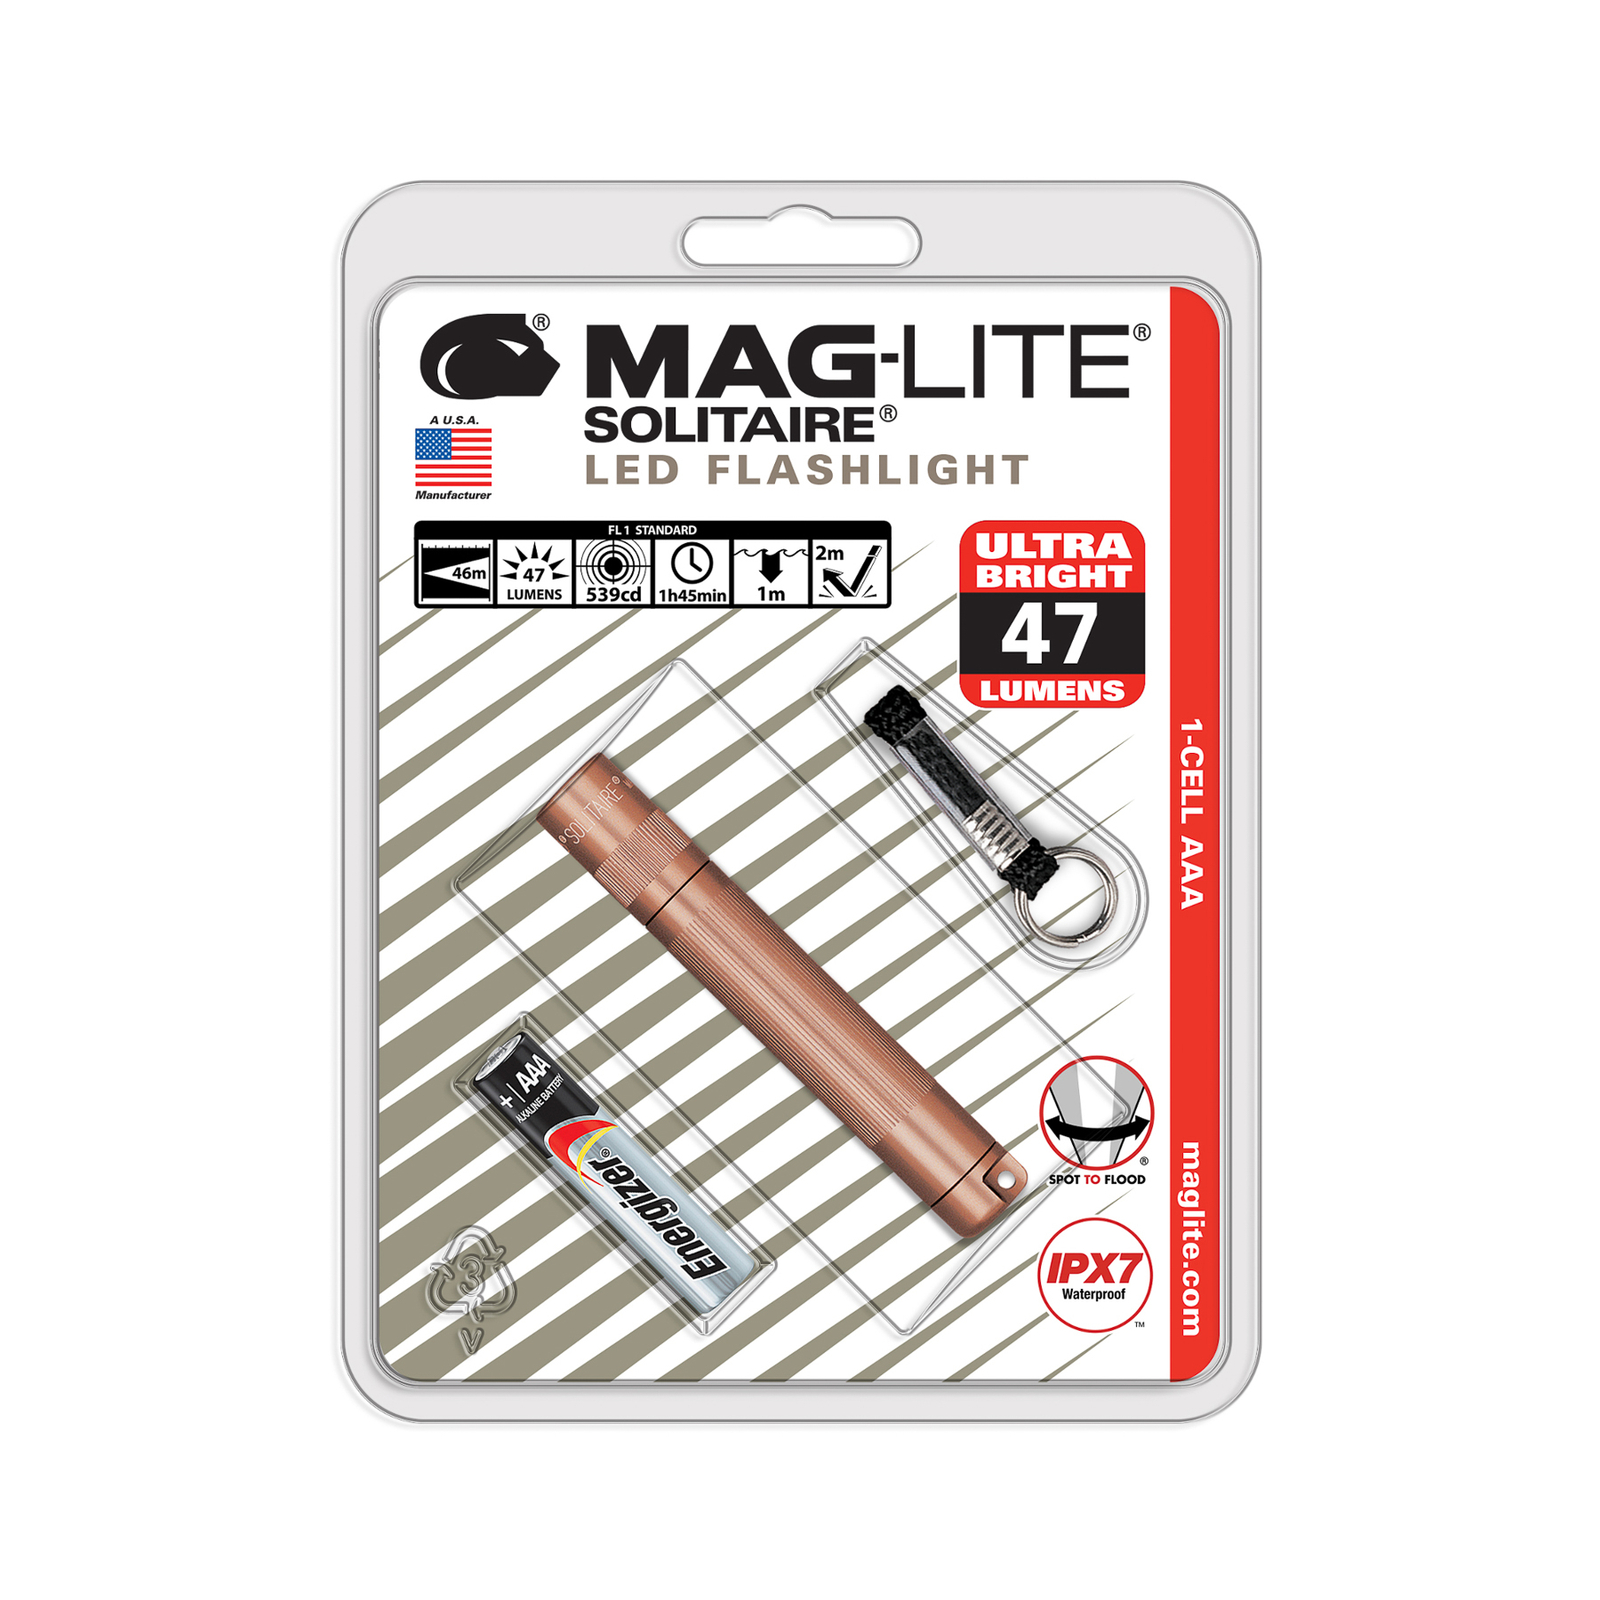 Svítilna Maglite LED Solitaire, 1 článek AAA, růžová